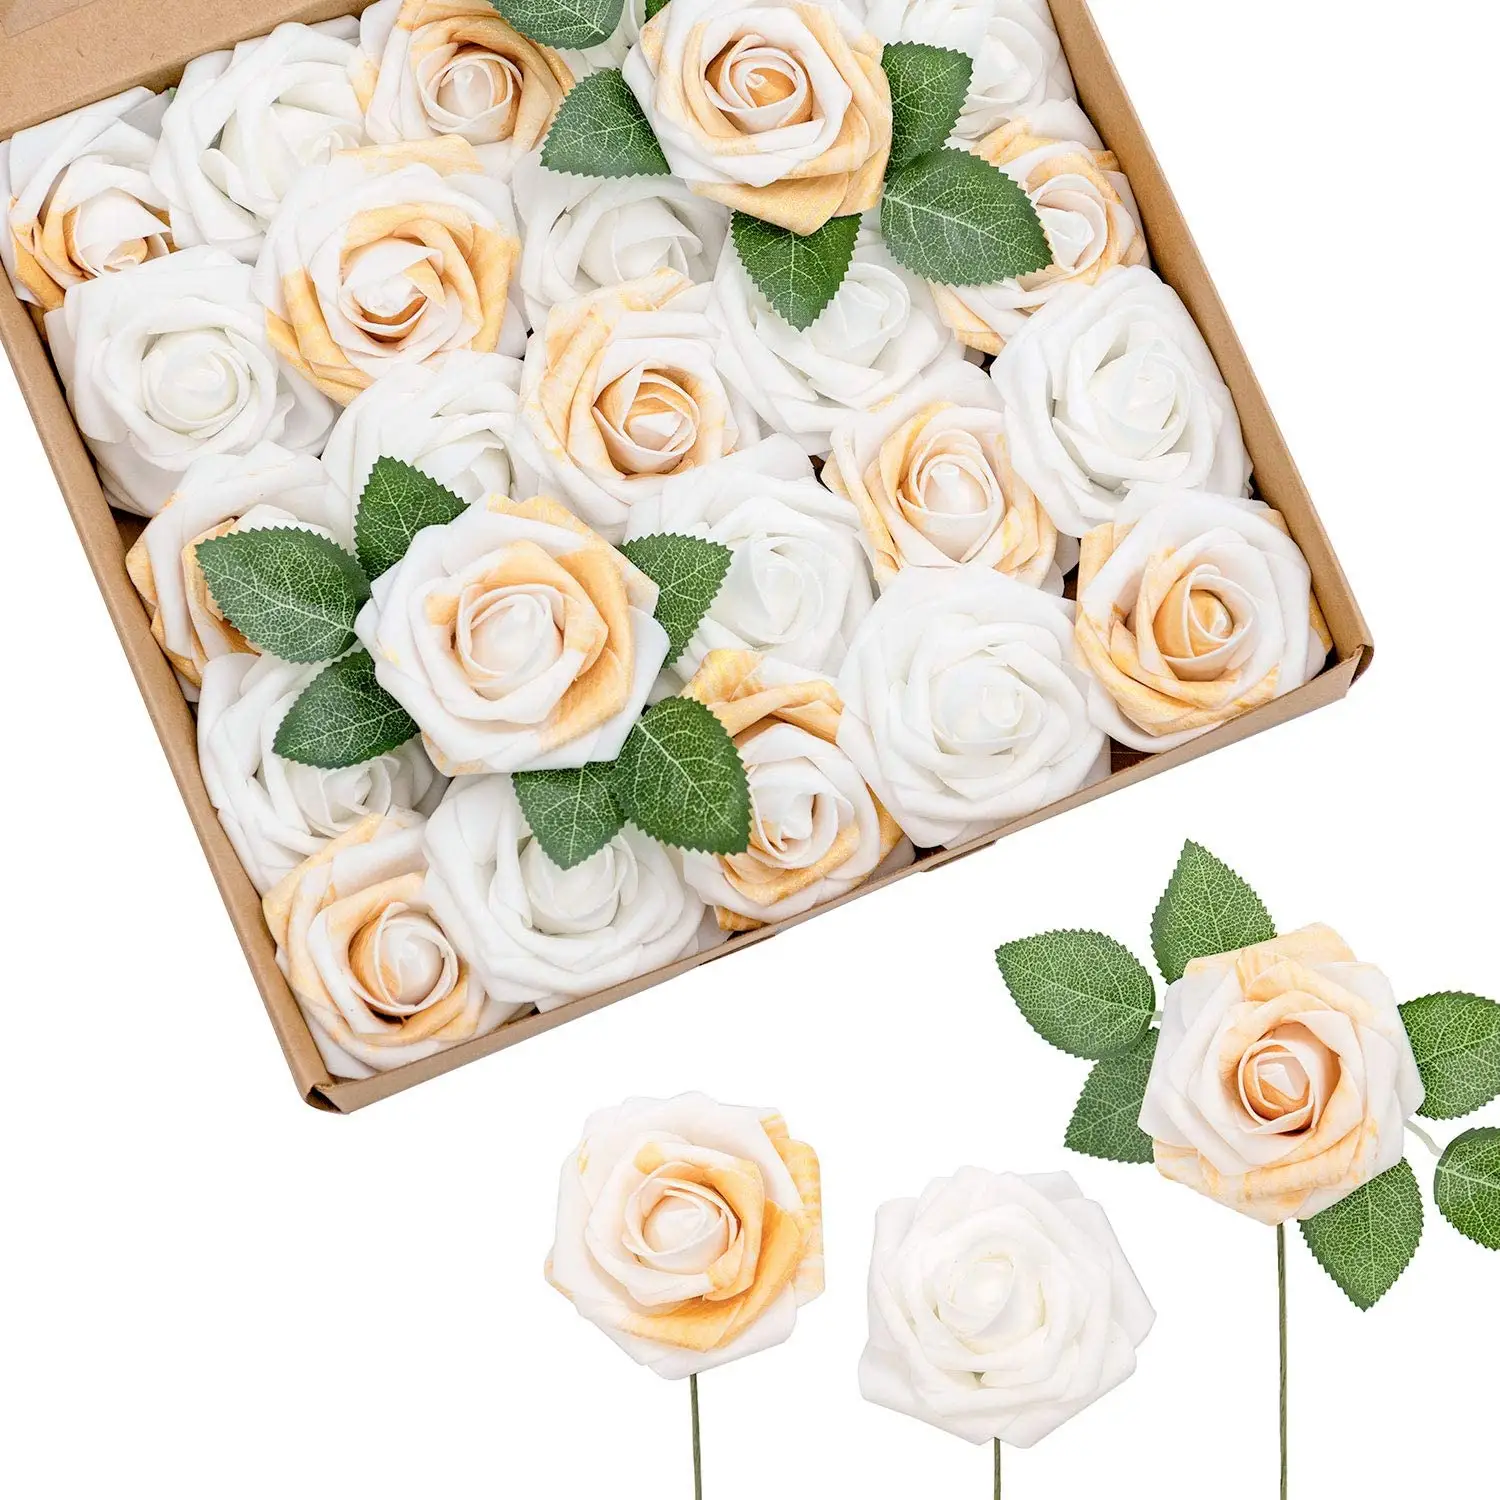 25PCS White & Gold artificial Roses Combo flower with Stem home Wedding Decor Centerpieces Arrangements Bouquets flowers